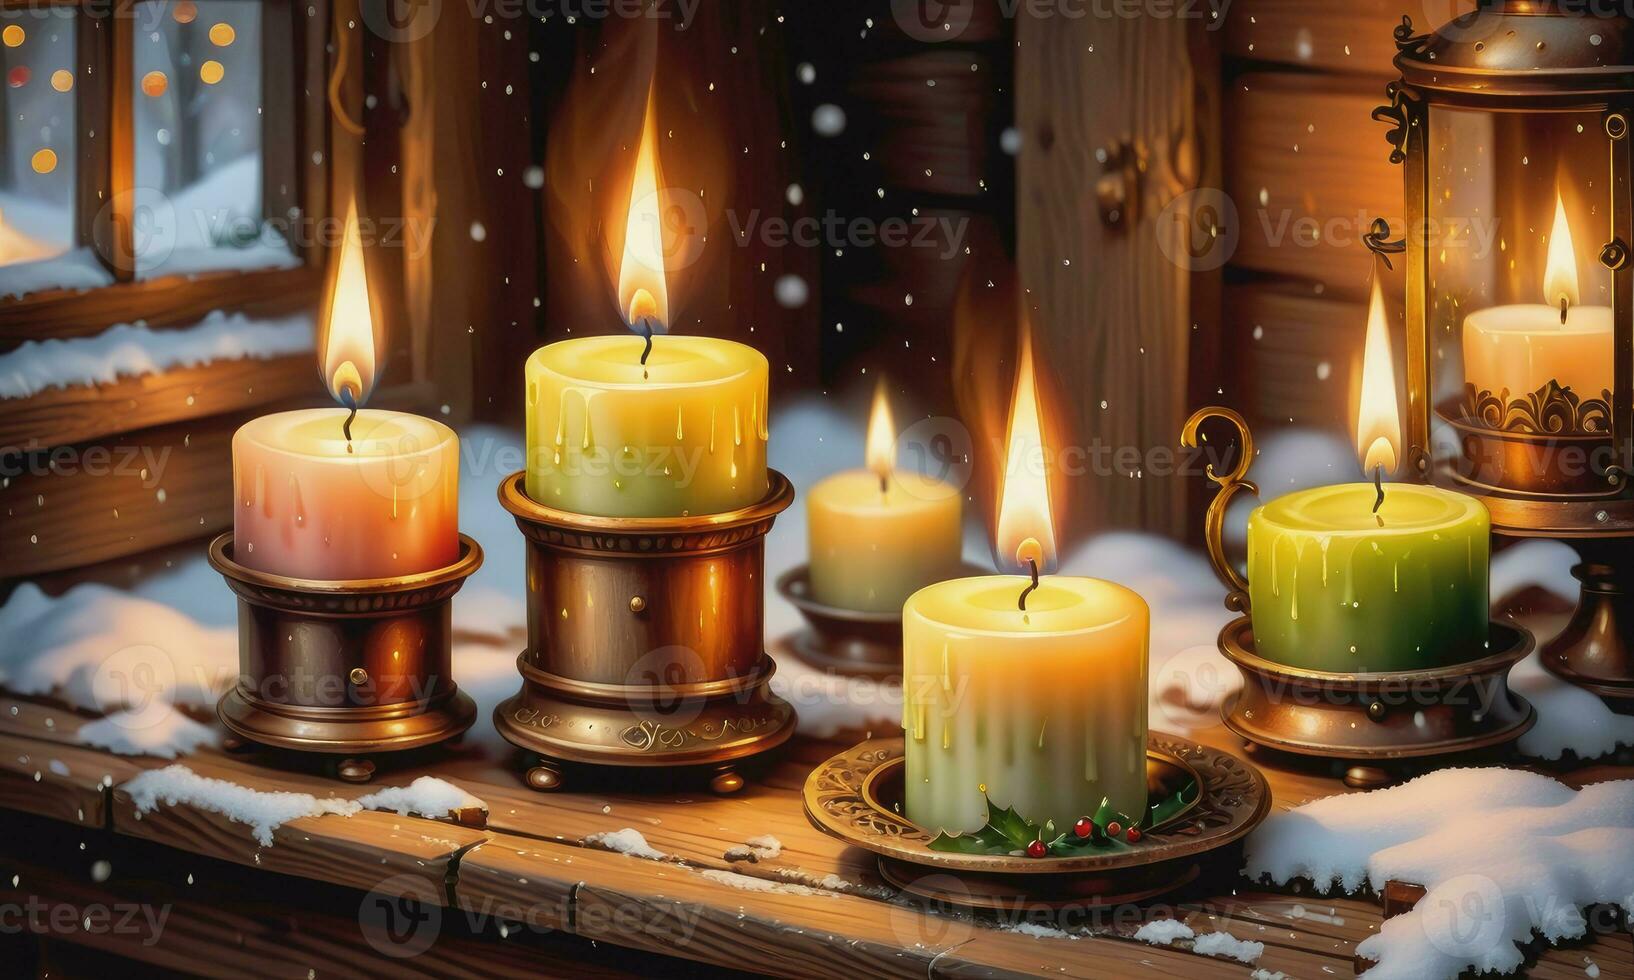 Burning candle Christmas decoration on wooden background photo